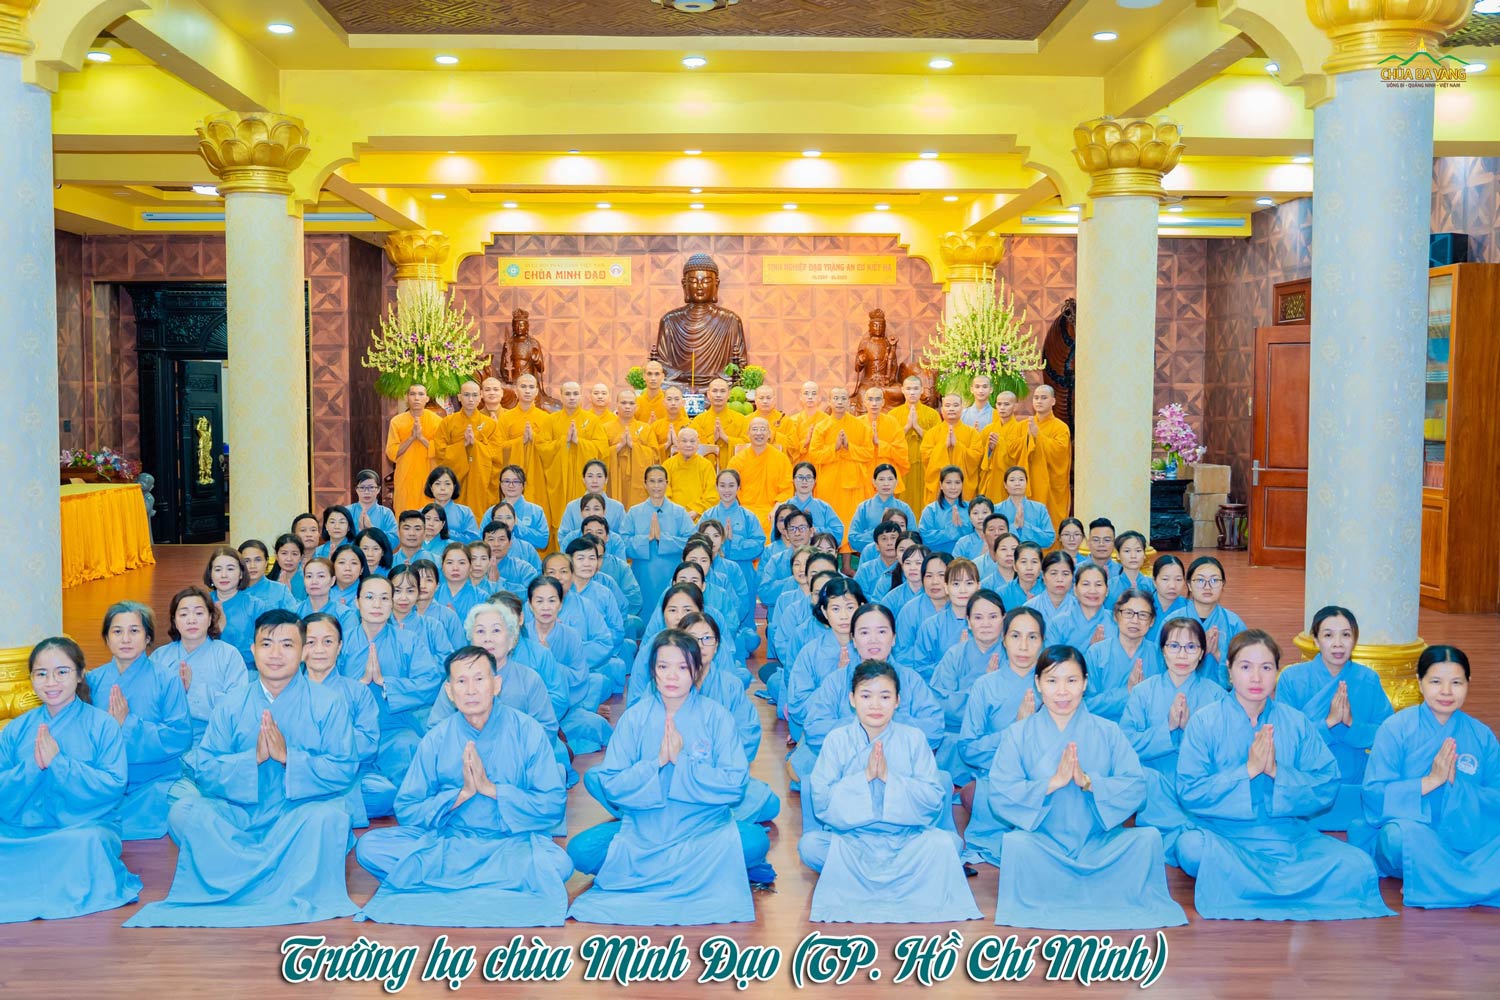 Sư Phụ Thích Trúc Thái Minh và các Phật tử chụp hình lưu niệm cùng quý chư Tôn thiền đức tại trường hạ chùa Minh Đạo